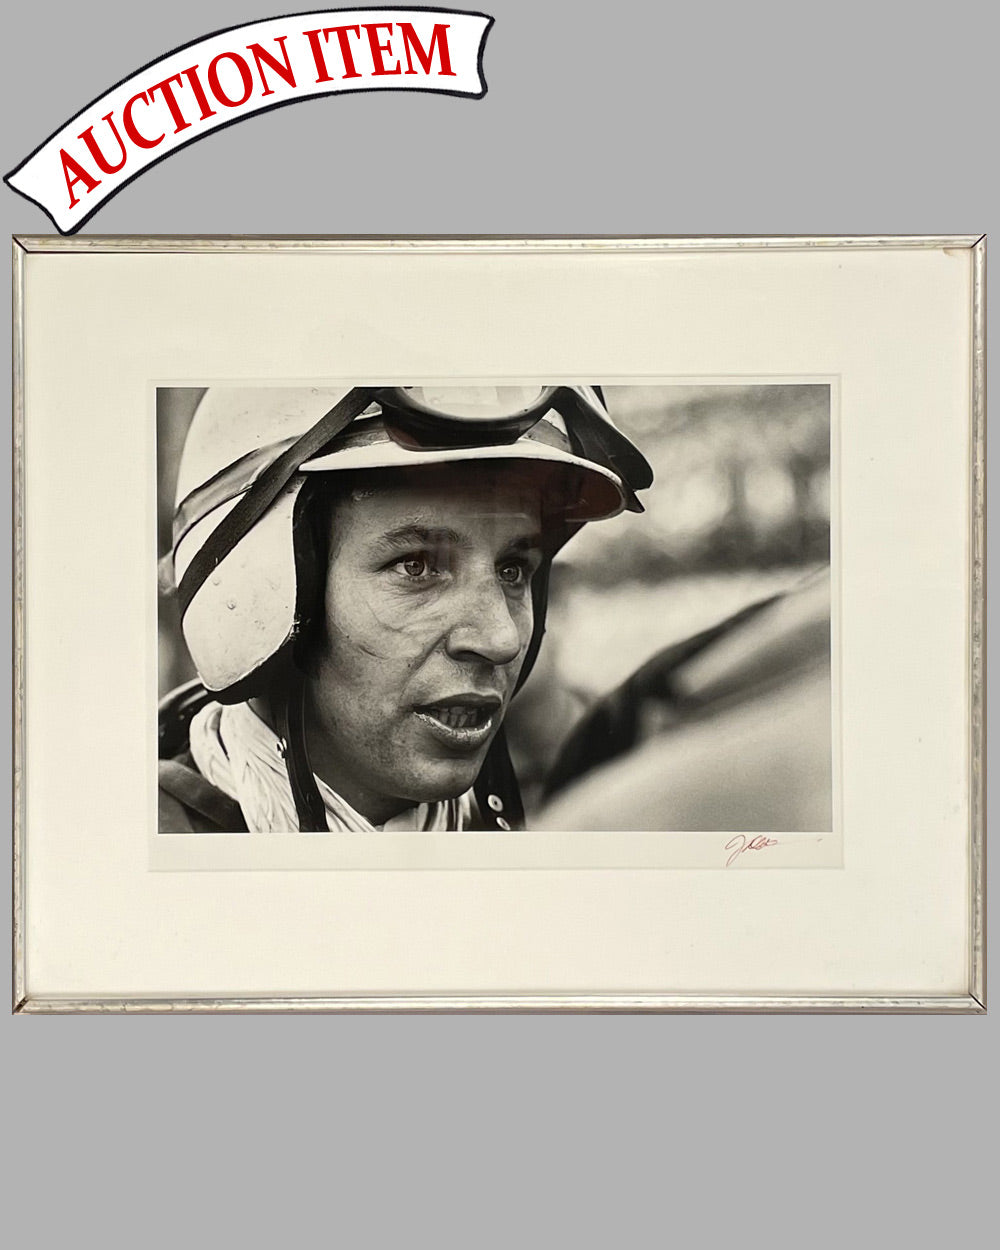 John Surtees portrait, 1960 b&w photograph by Jesse Alexander